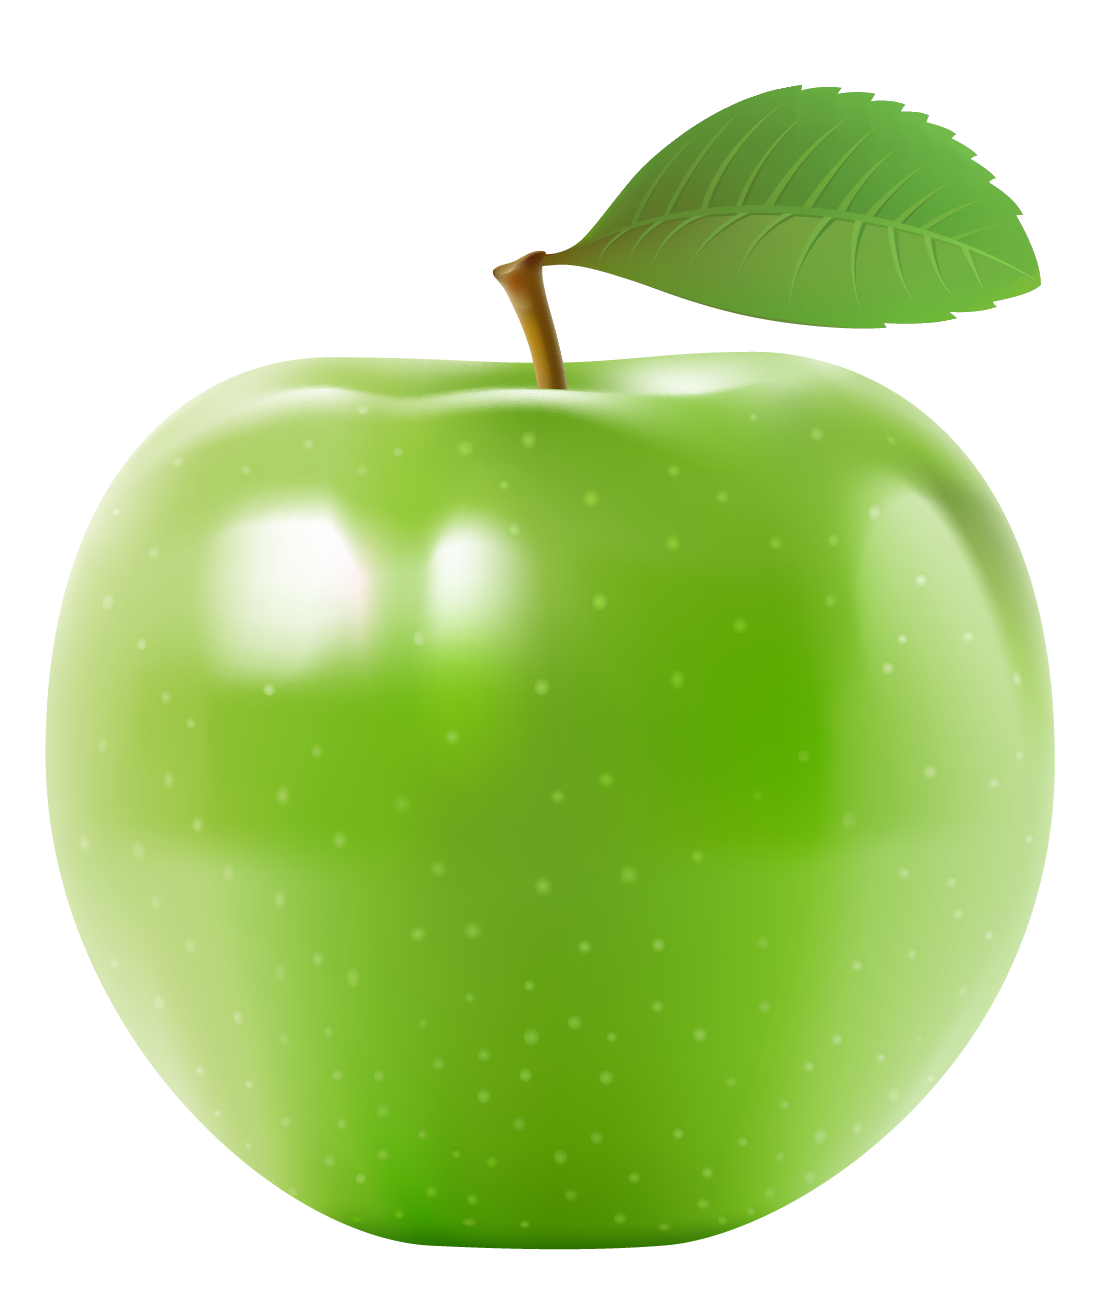 التفاح الأخضر PNG Clipart